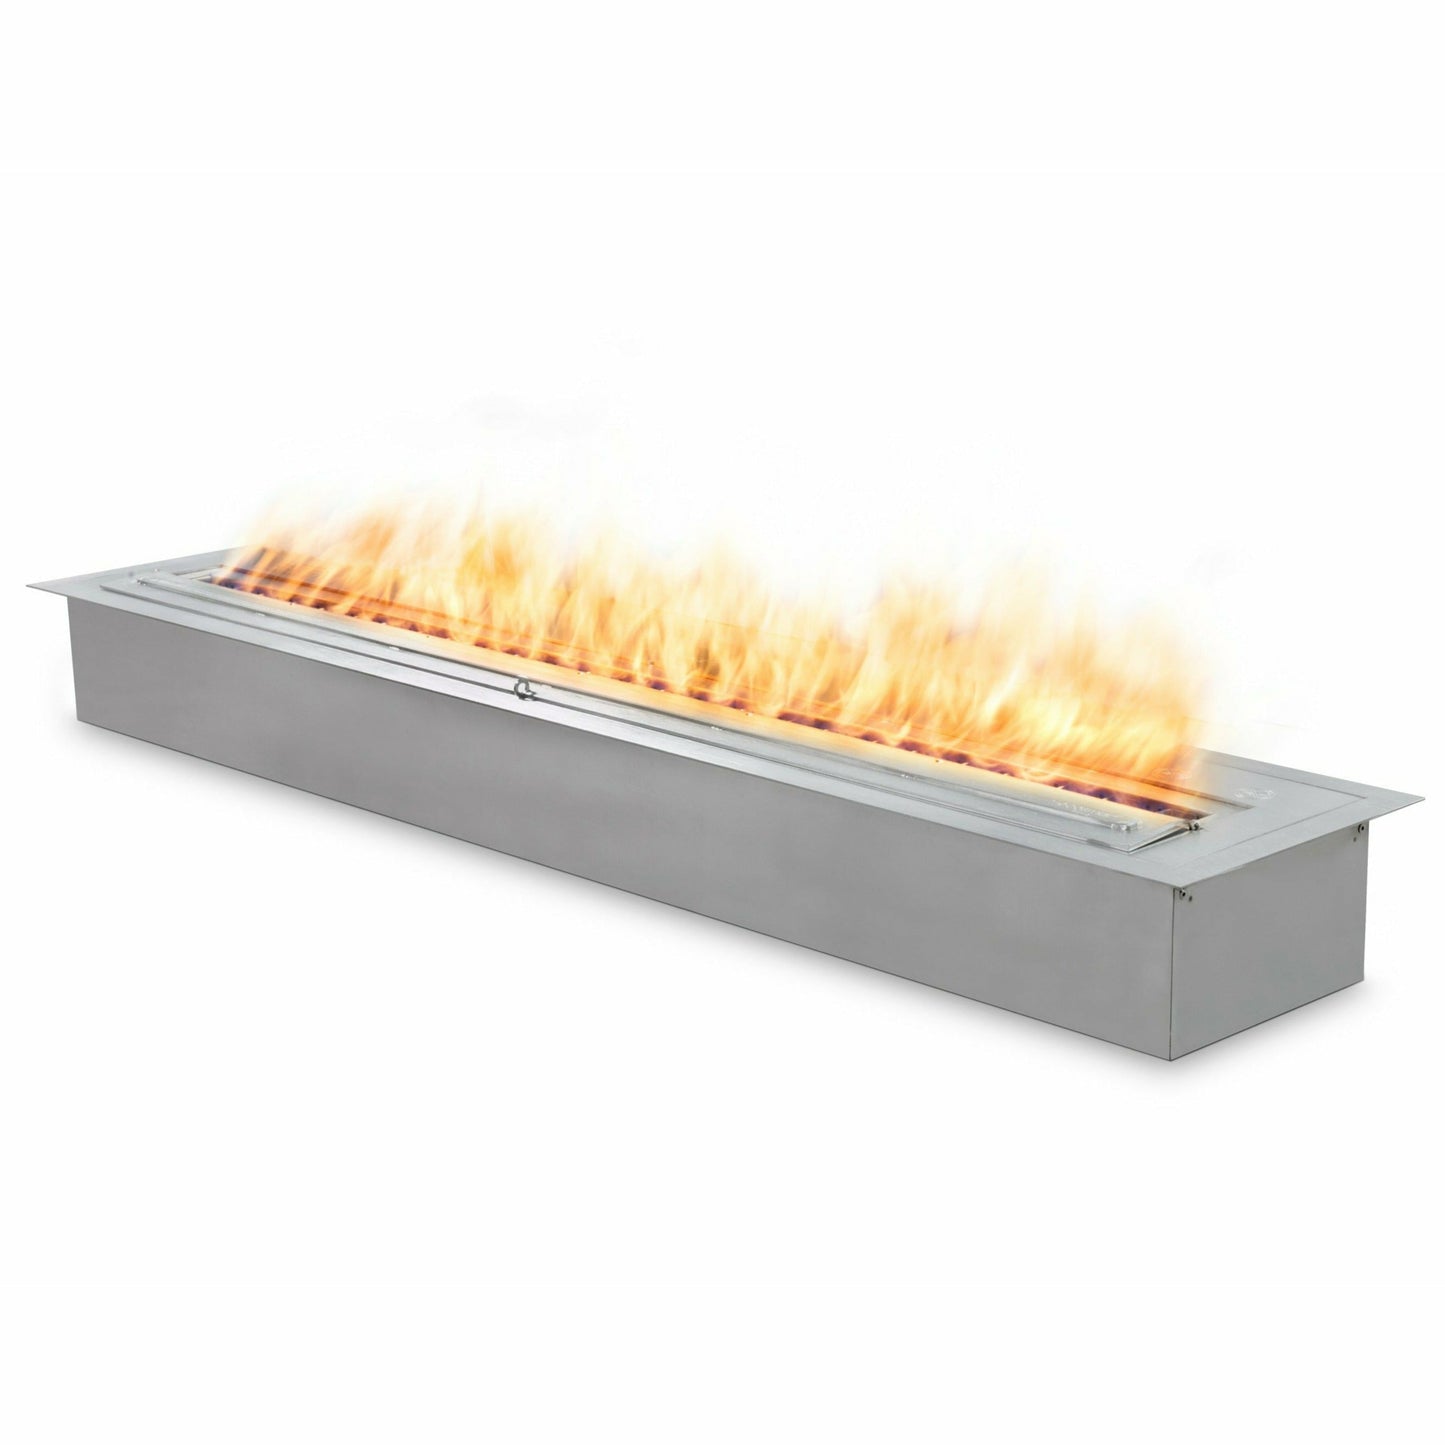 EcoSmart Fire Flex 68 Bioethanol Fireplace Single Sided - Alfresco Heat